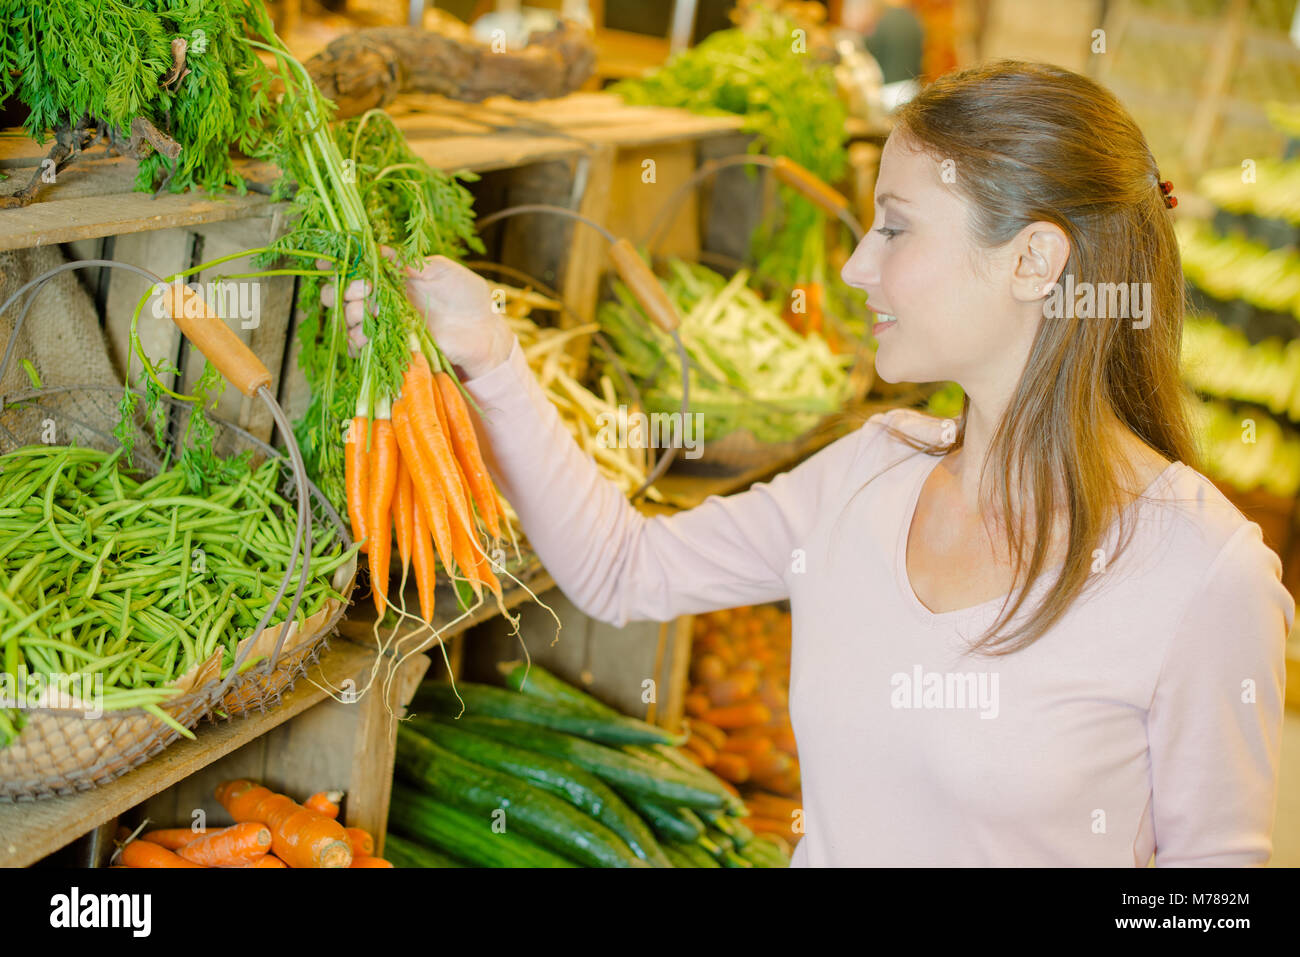 Lady buying fresh carrots Stock Photo